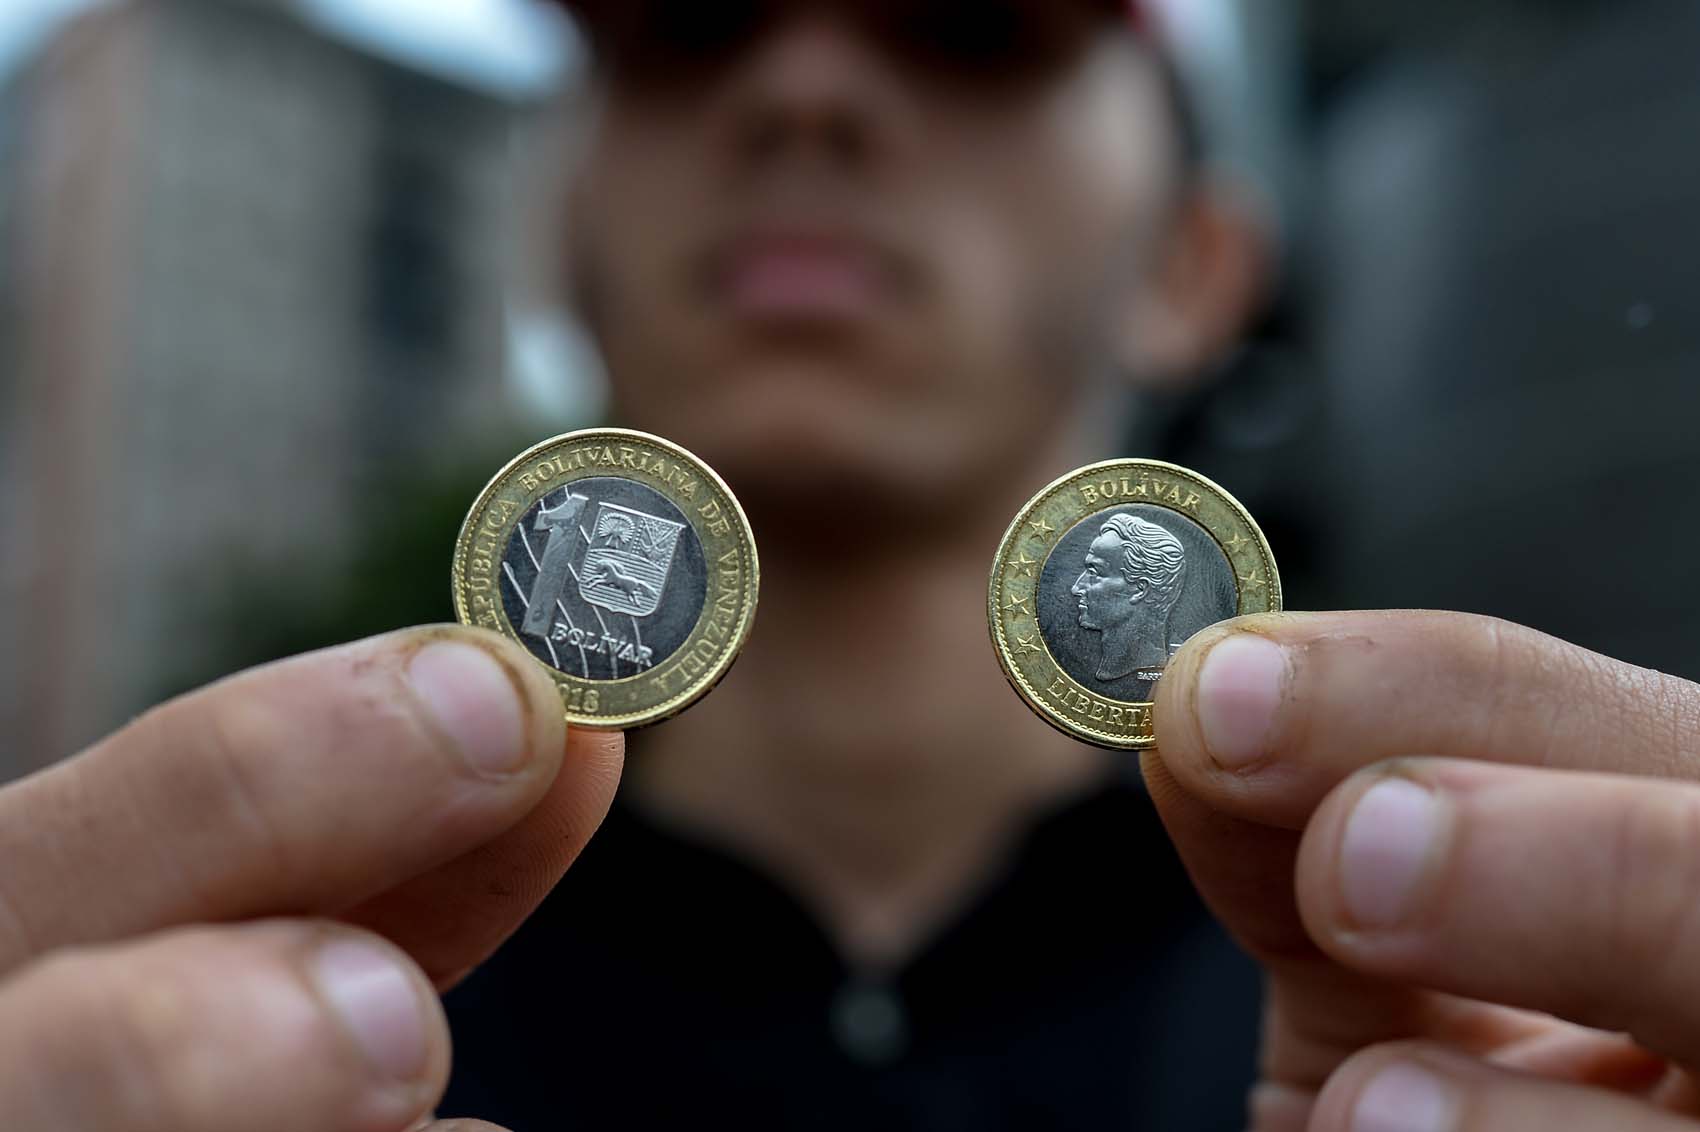 Transacciones en bitcoin registran niveles récord en Venezuela luego de la introducción del bolívar soberano